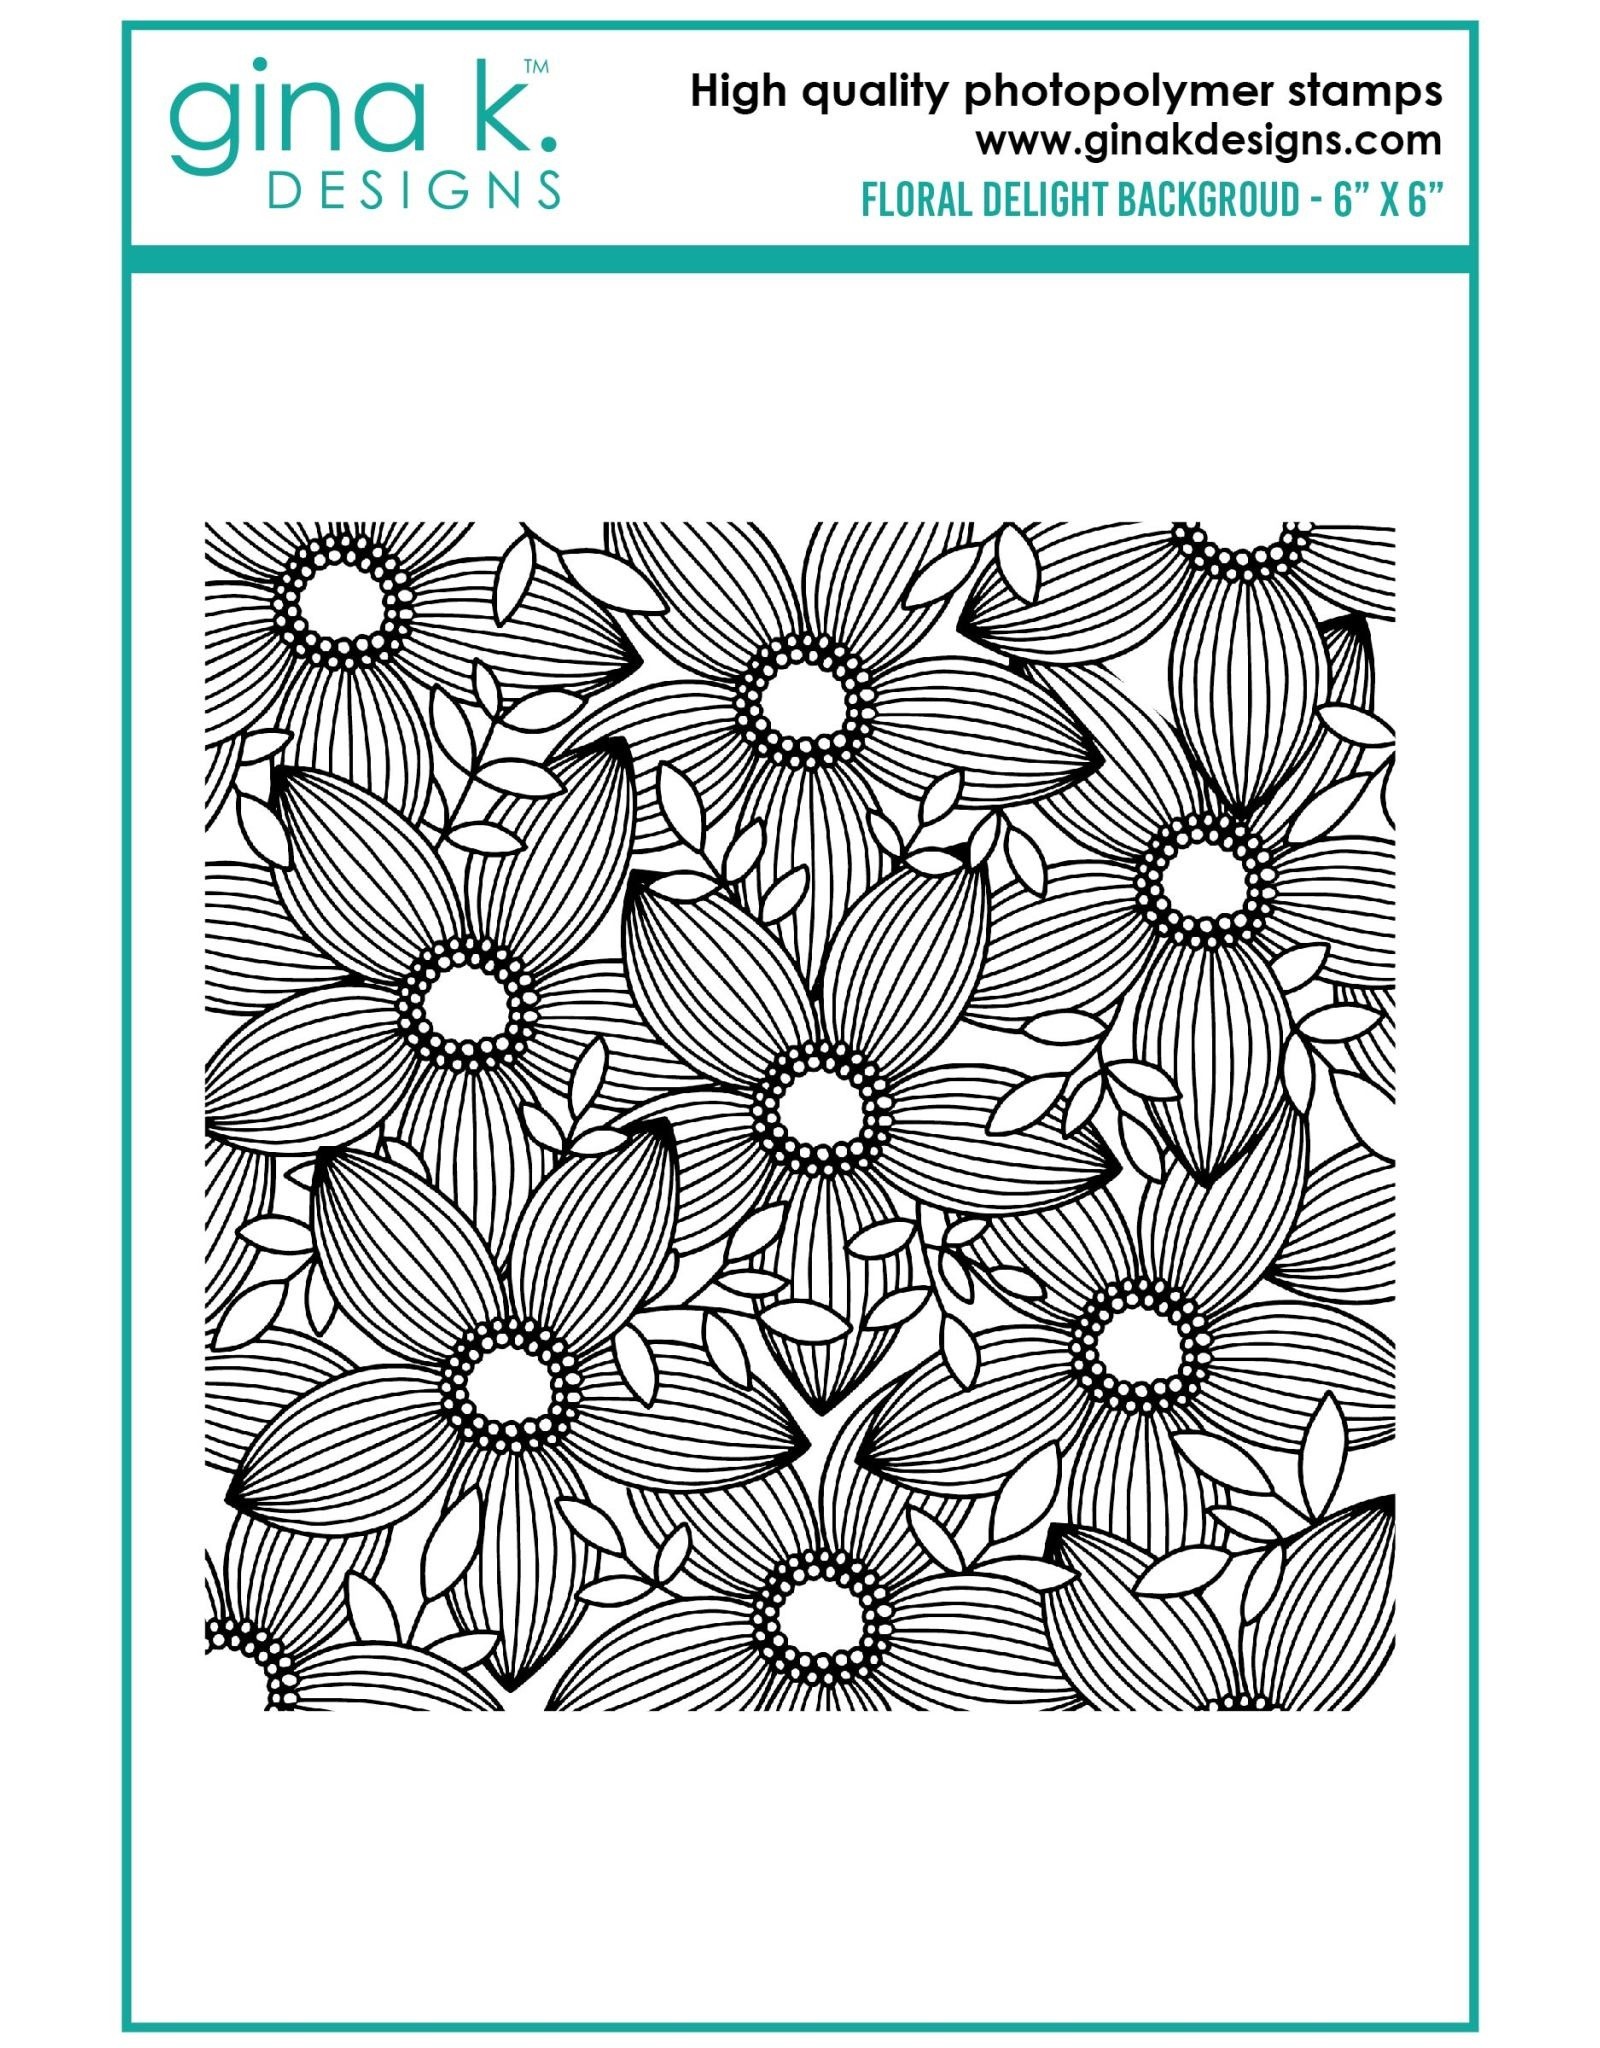 Gina K. Designs Floral Delight Background Stamps